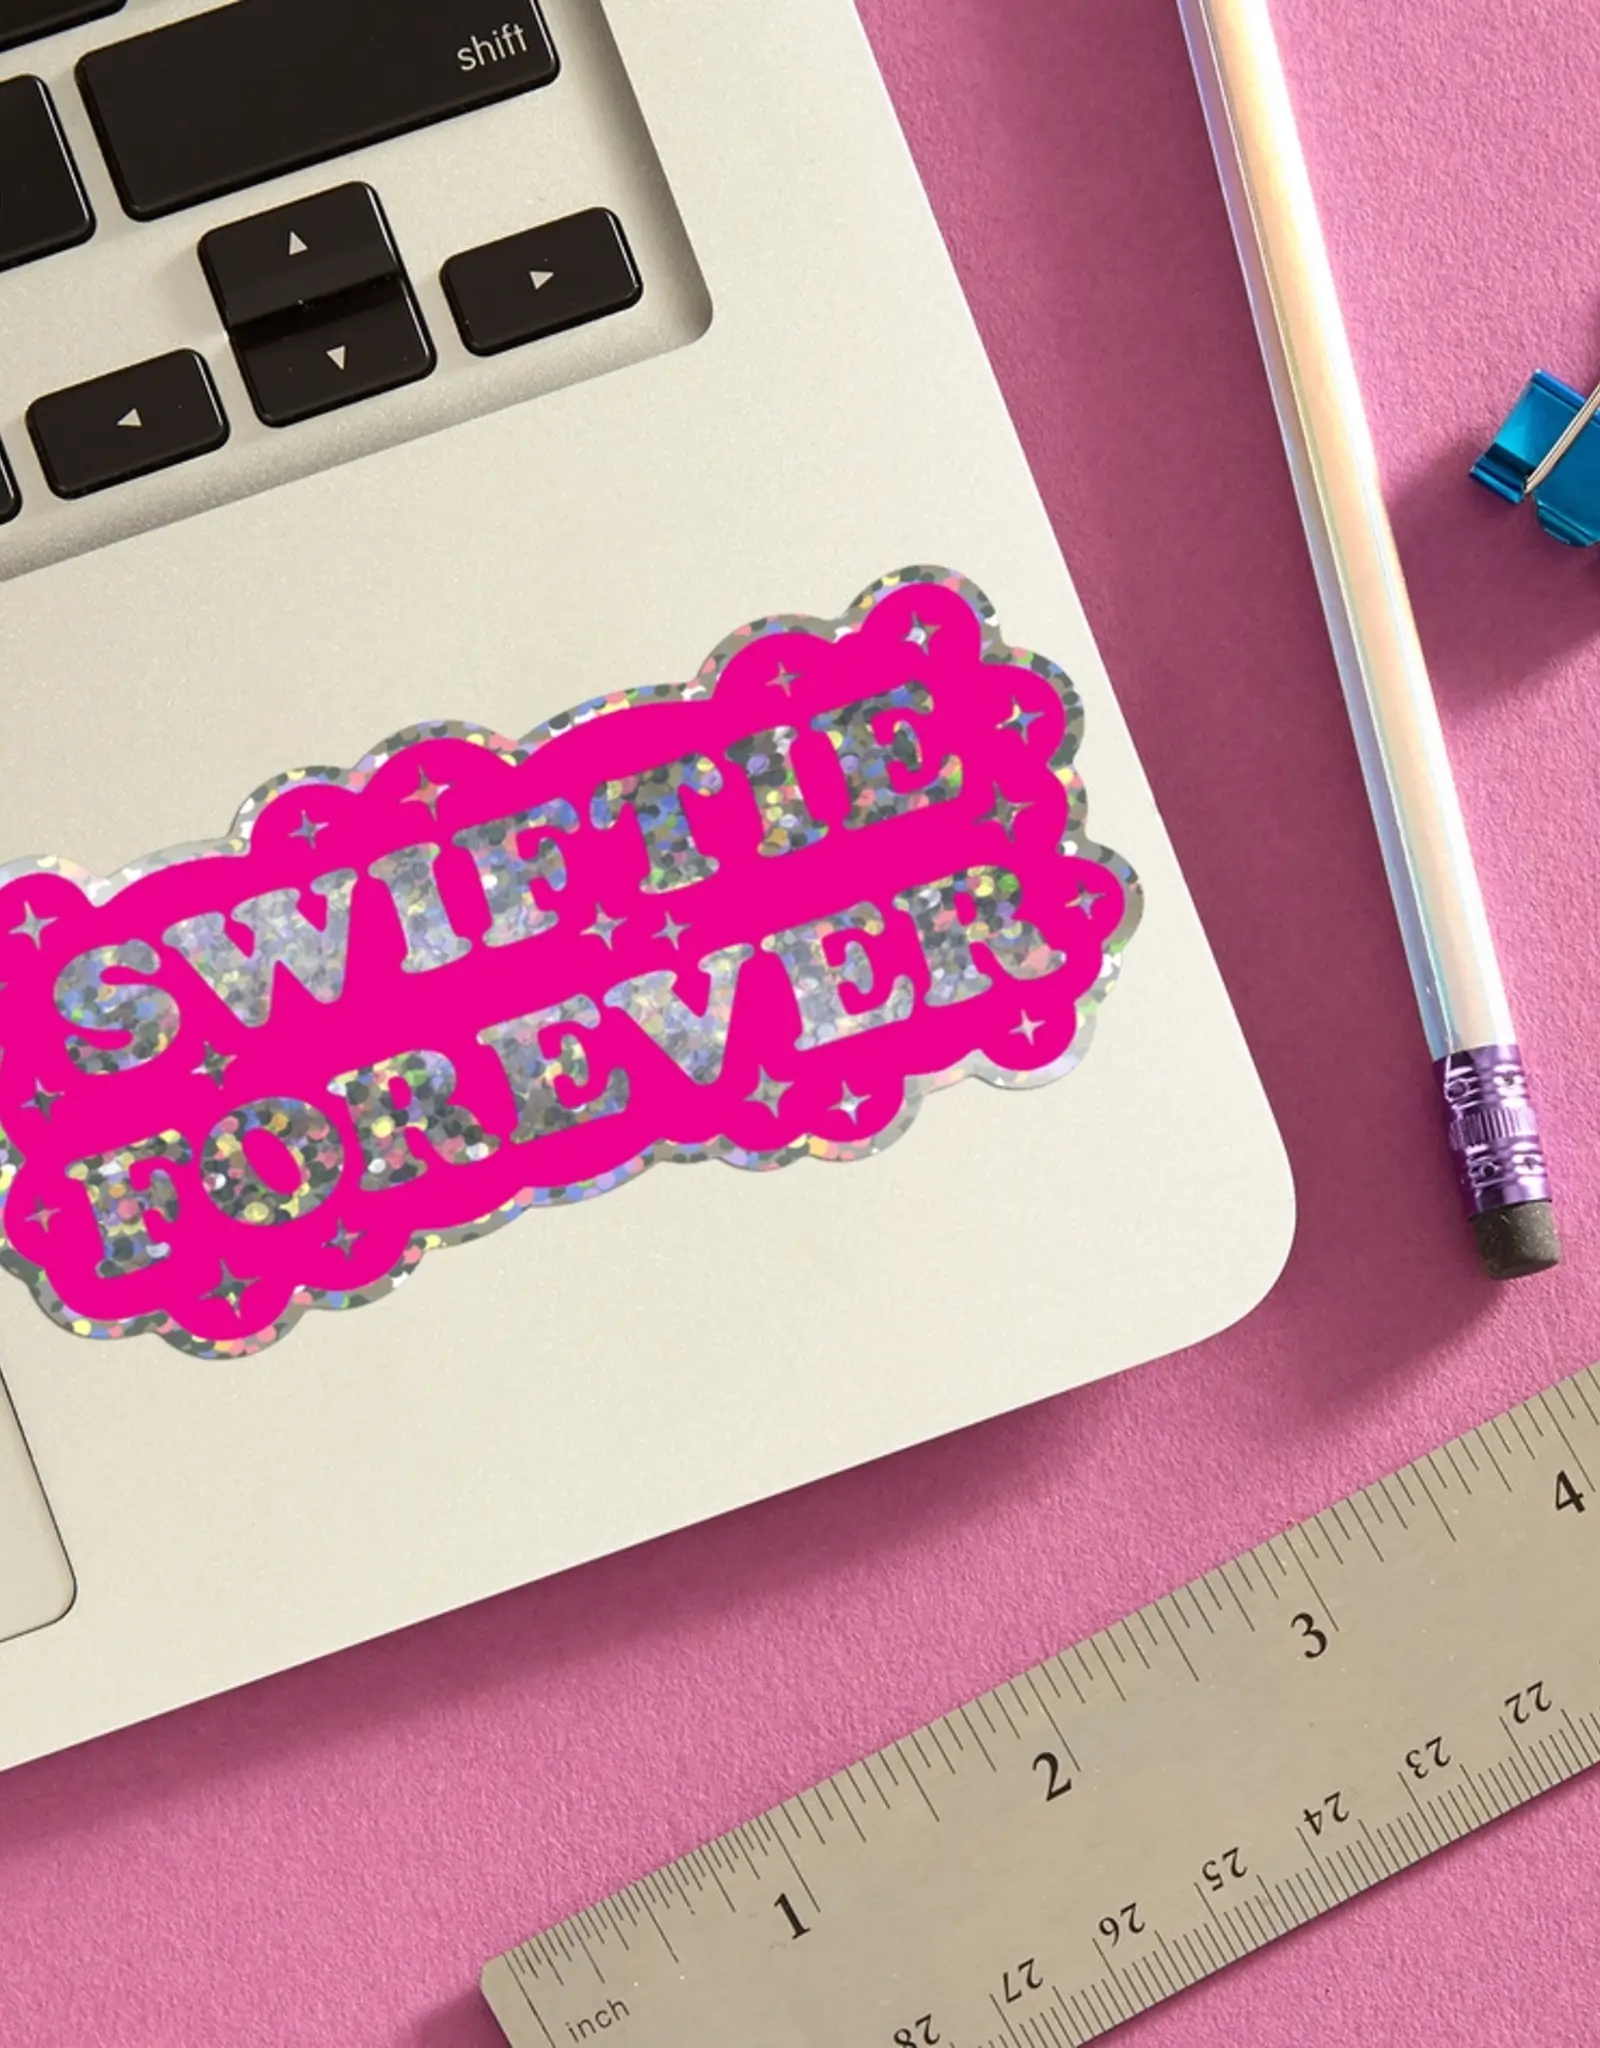 The Found Sticker - Swiftie Forever